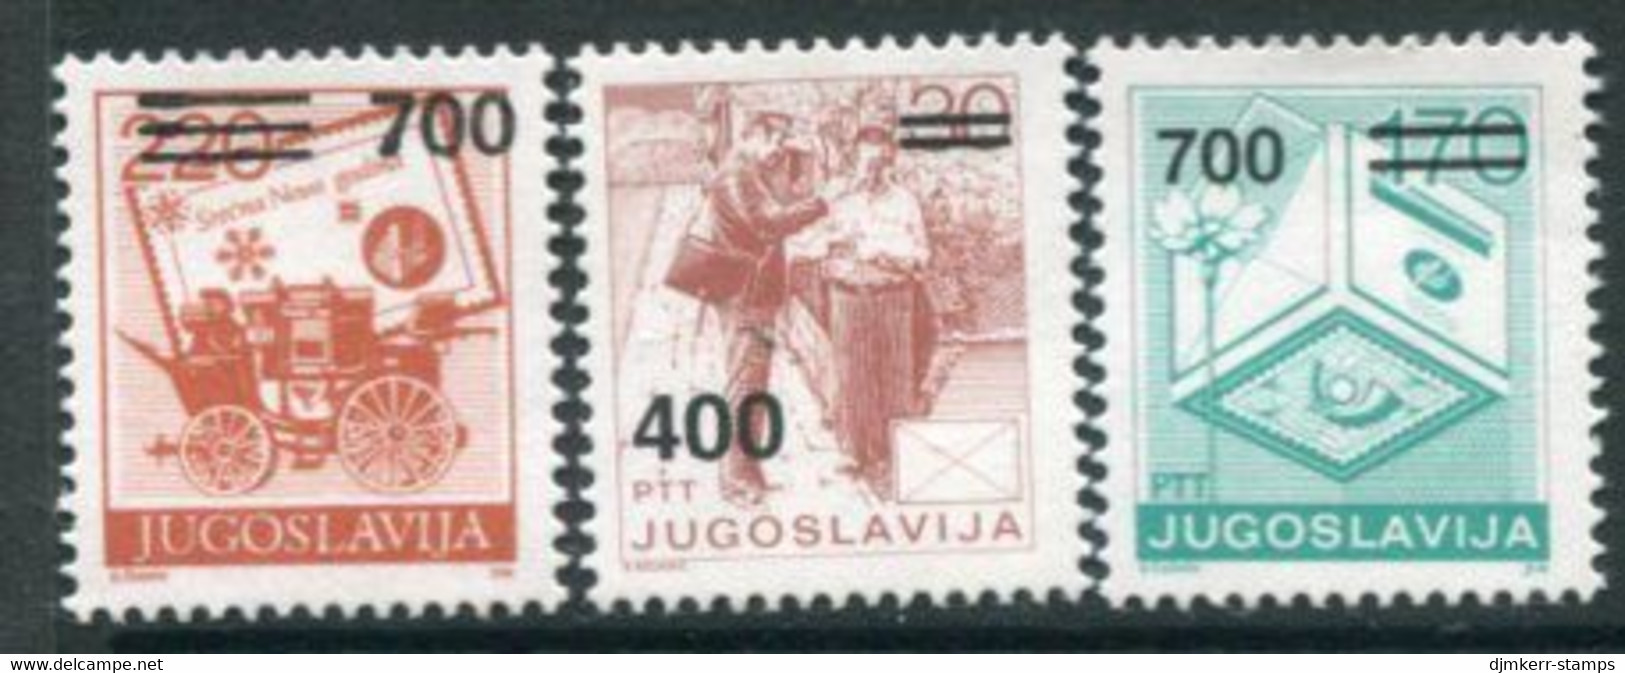 YUGOSLAVIA 1989 Surcharges 400 D, 700 D. (2) MNH / **.  Michel 2359, 2363-64 - Nuevos